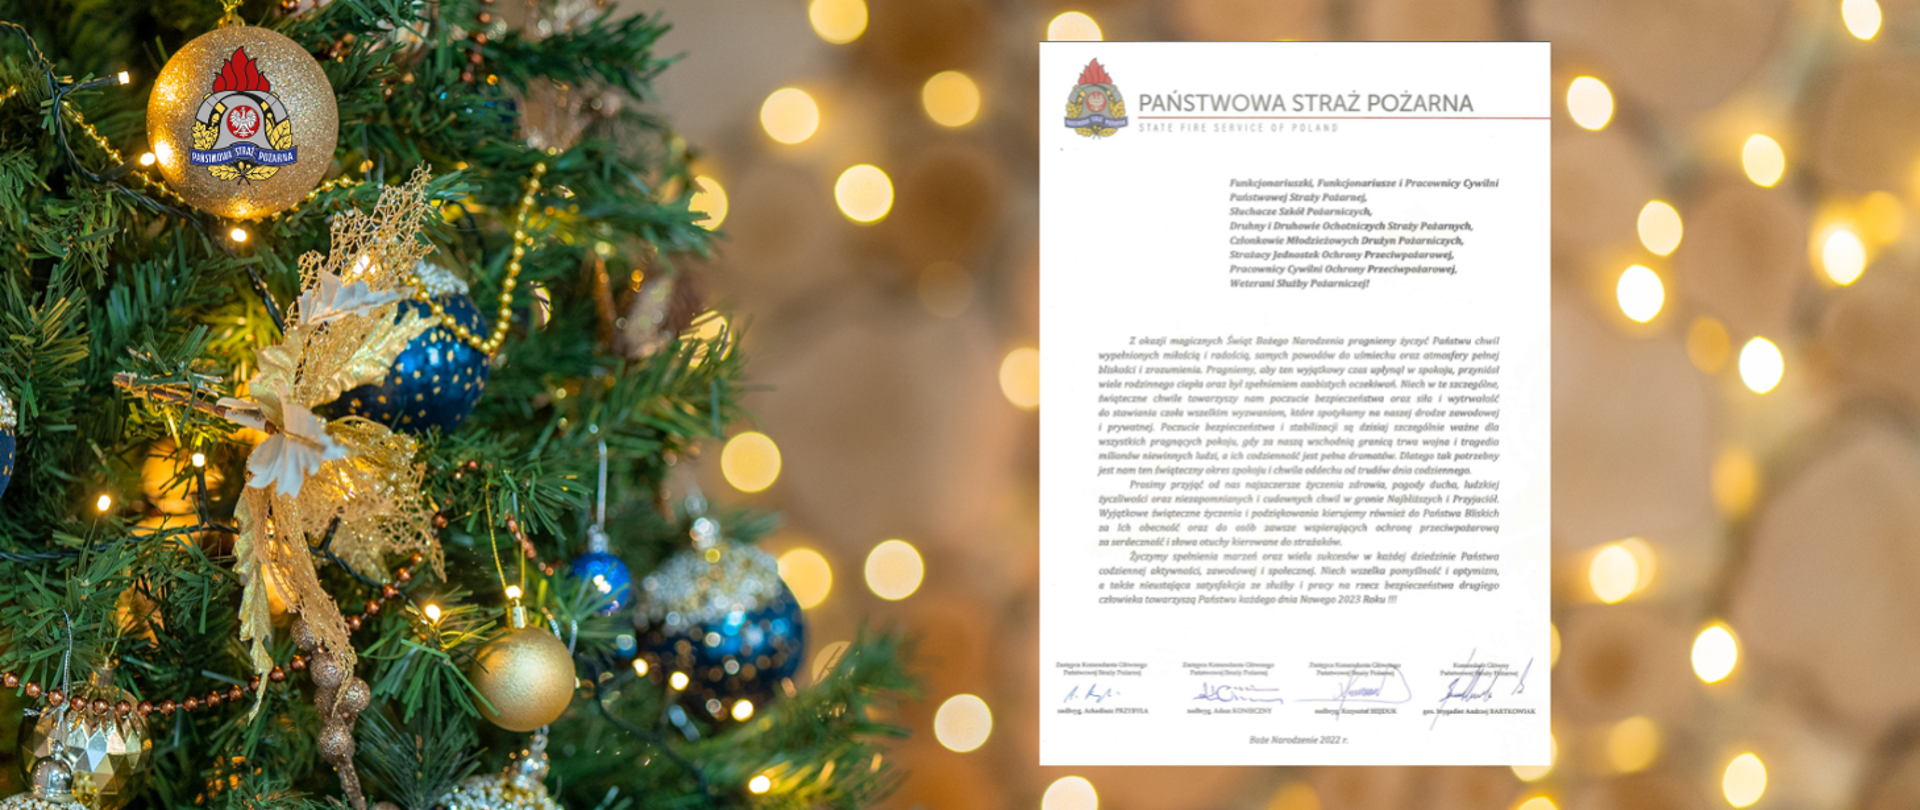 Widok przystrojonej choinki z prawej strony miniatura listu z życzeniami świąteczno-noworocznymi Komendanta Głównego PSP